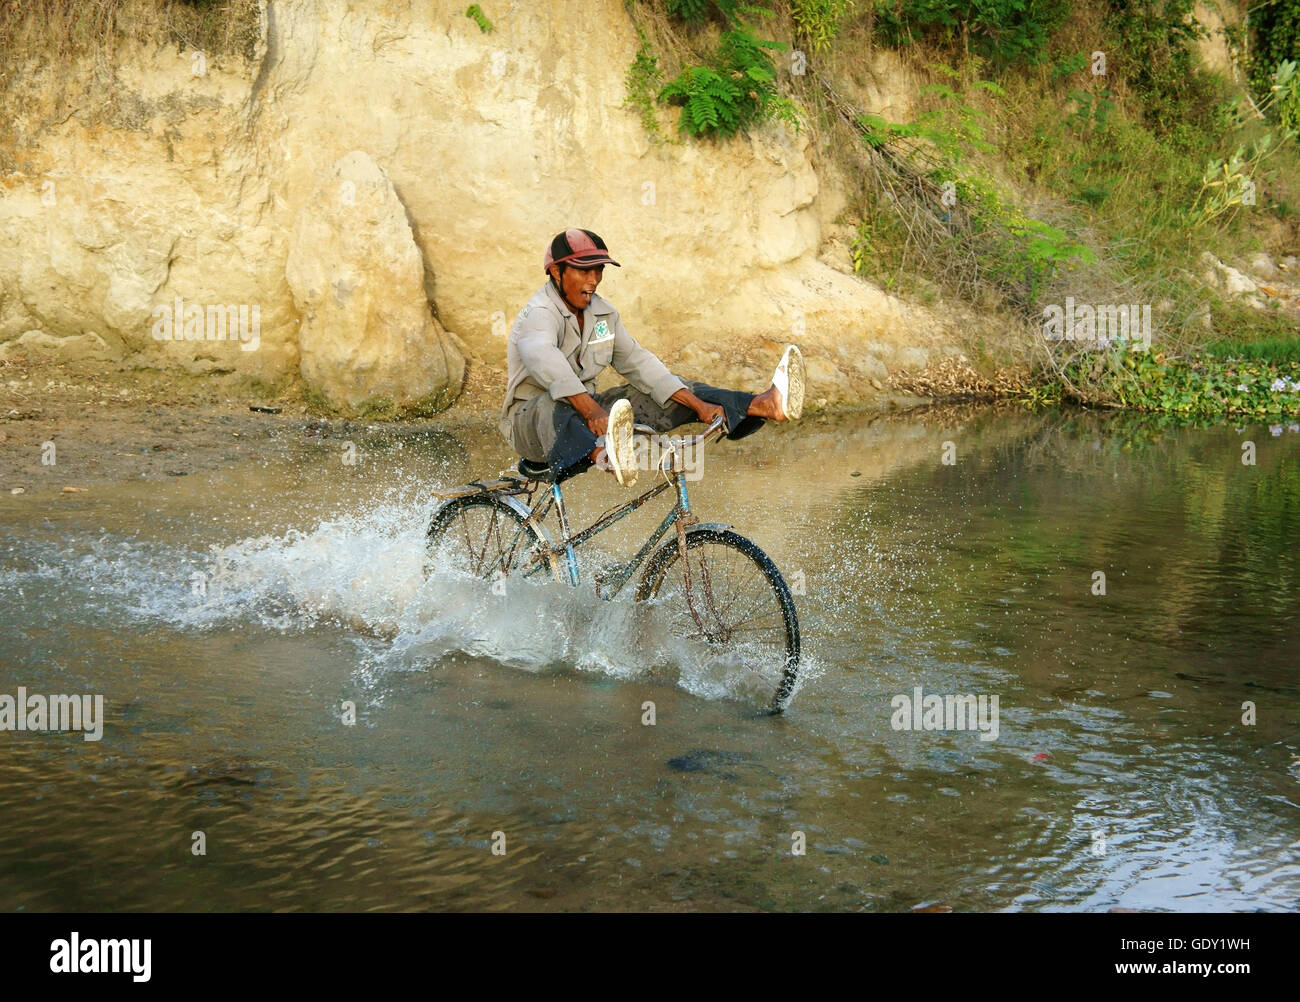 PHAN RANG, VIET NAM, hombre asiático montando bicicleta, gente corriente transversal a través del agua con la piedra, el estilo de vida a la población pobre rural vietnamita Foto de stock